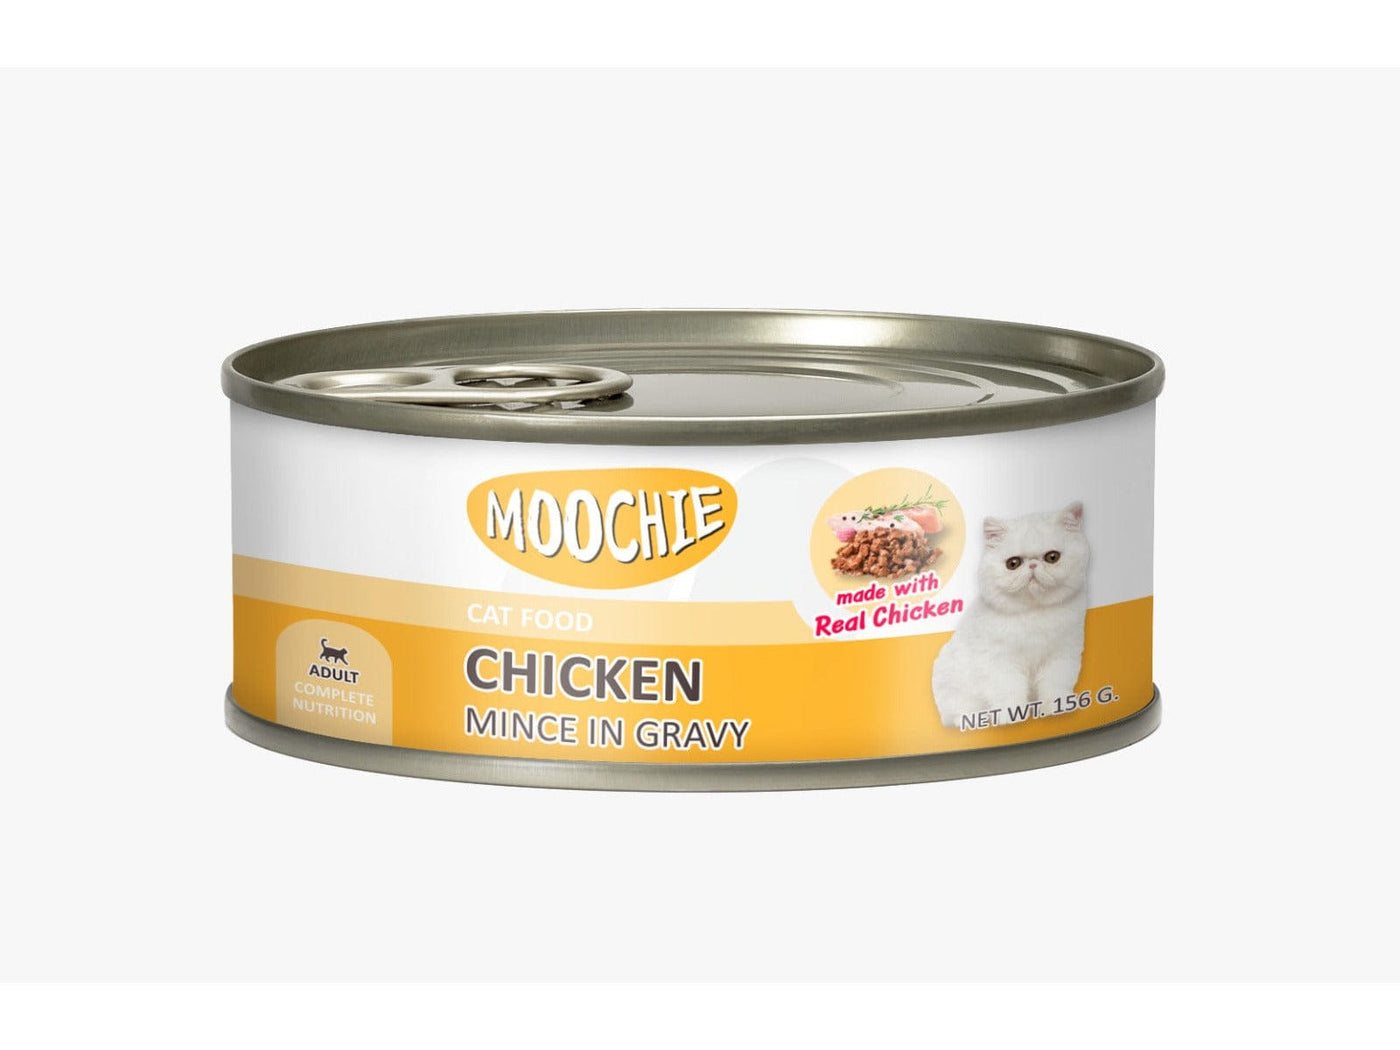 Moochie Mince With Chicken In Gravy Casserole 156G. Can